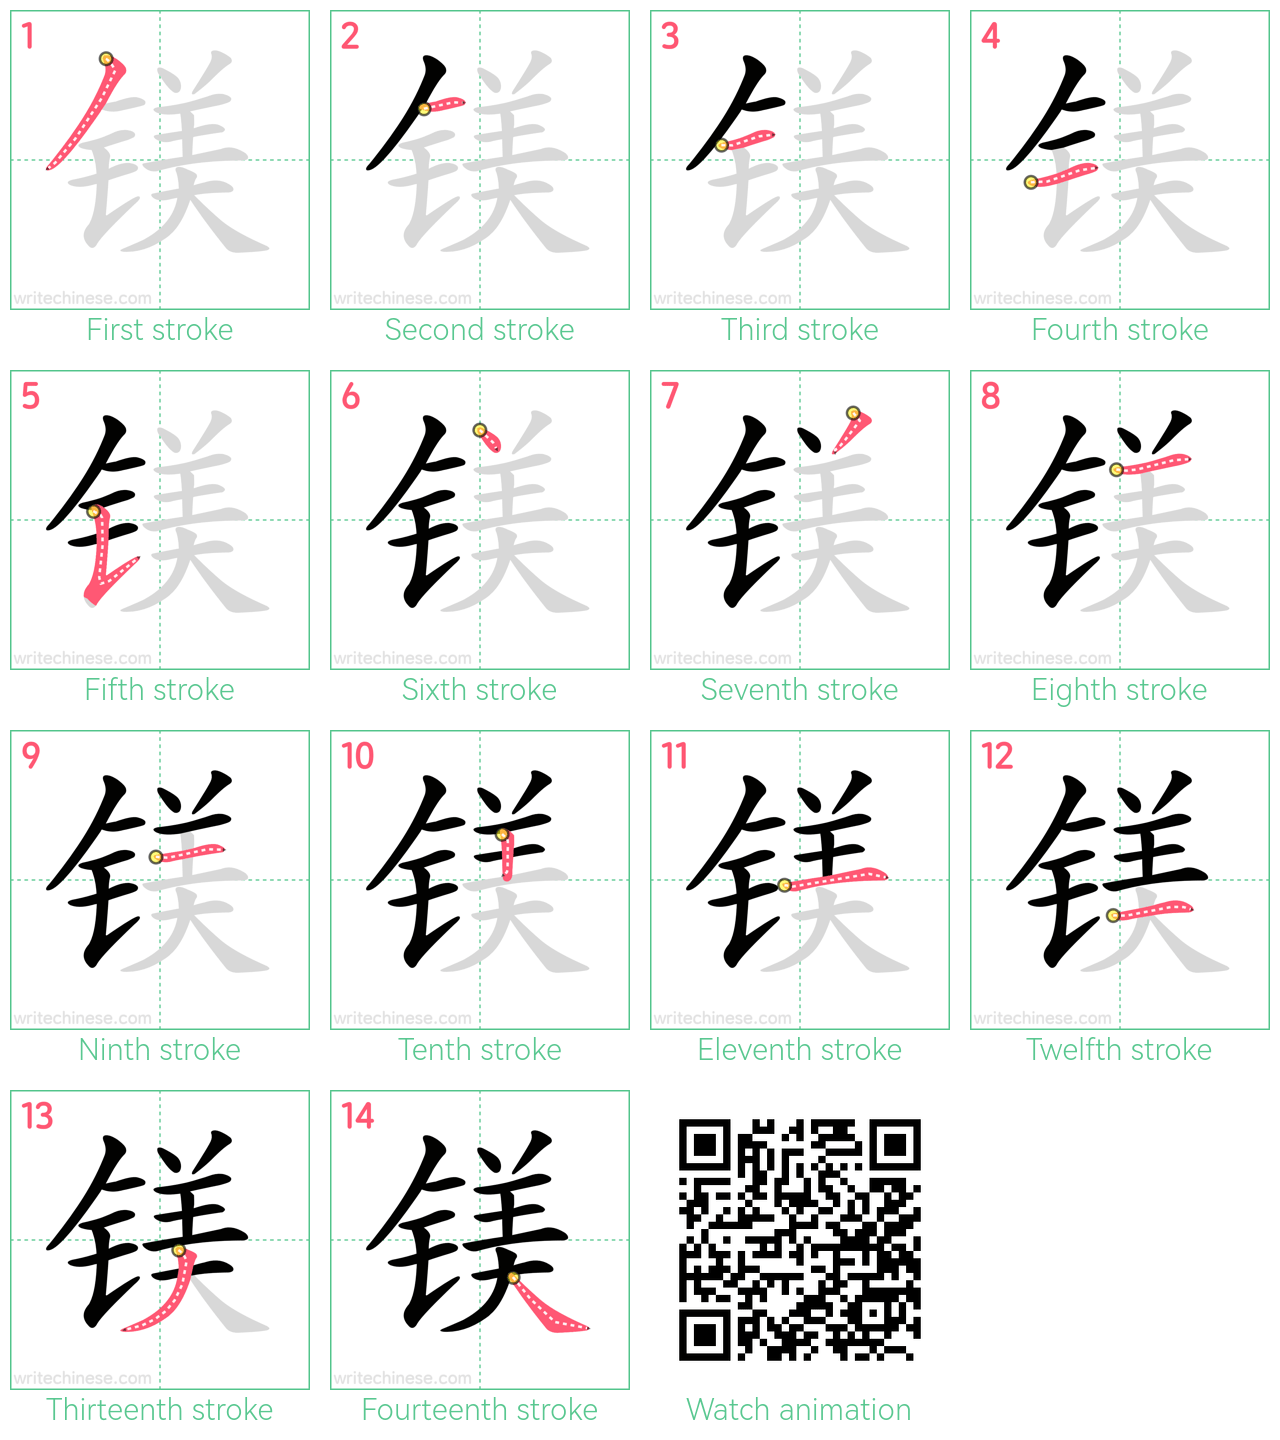 镁 step-by-step stroke order diagrams